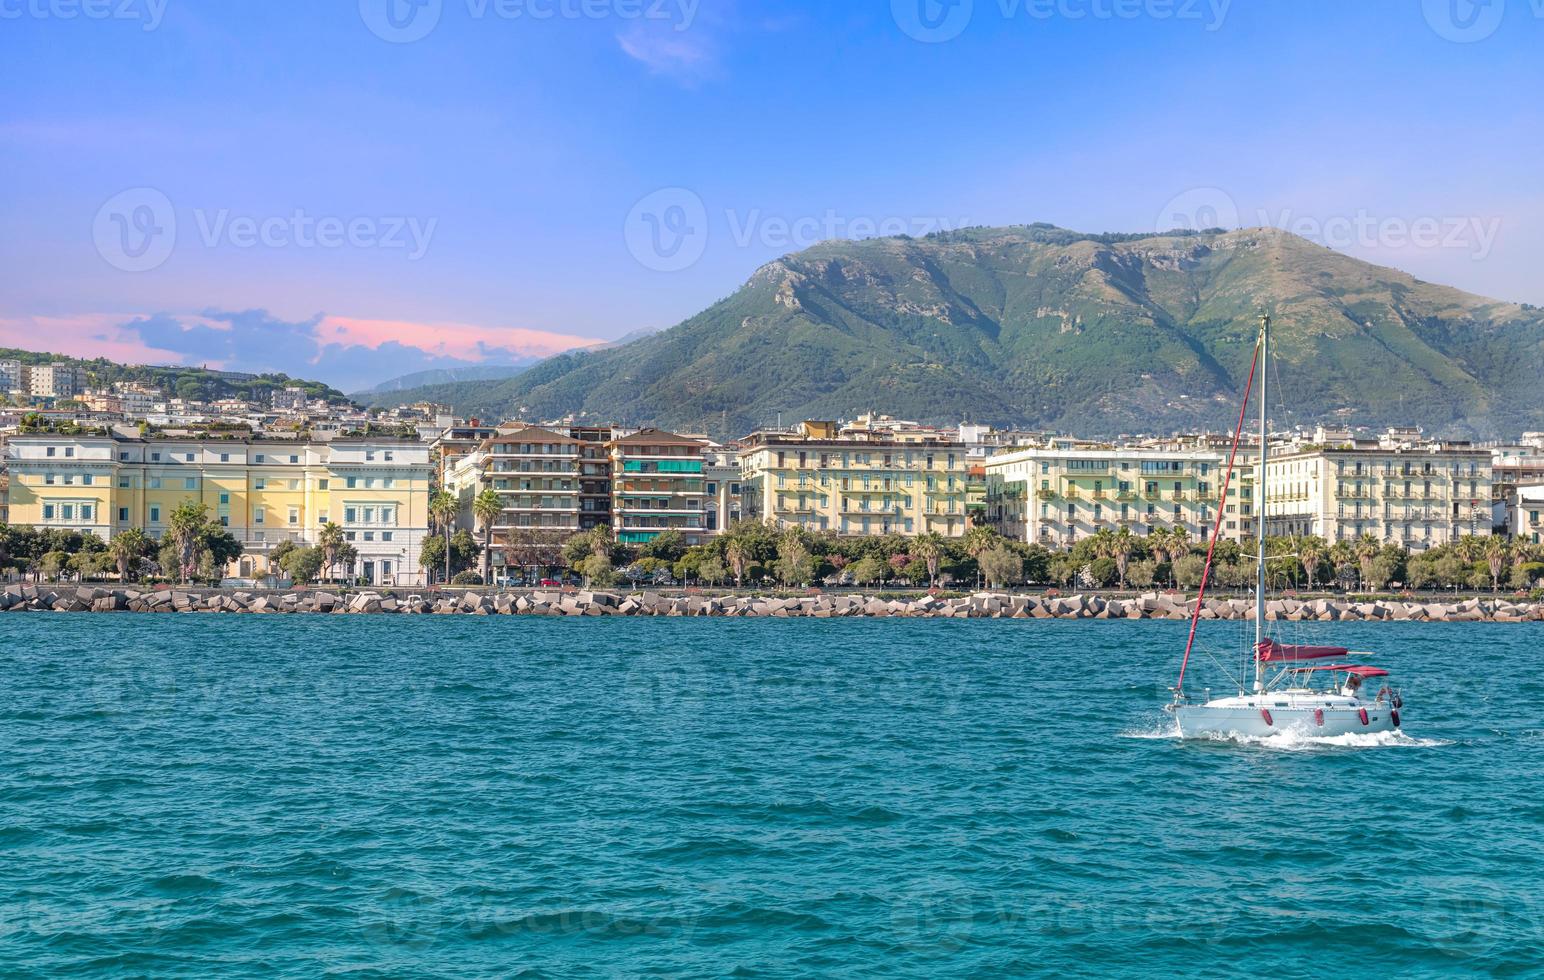 marina und yacht club in salerno, italien, ein ausgangspunkt für bootstouren an der positano- und amalfiküste foto